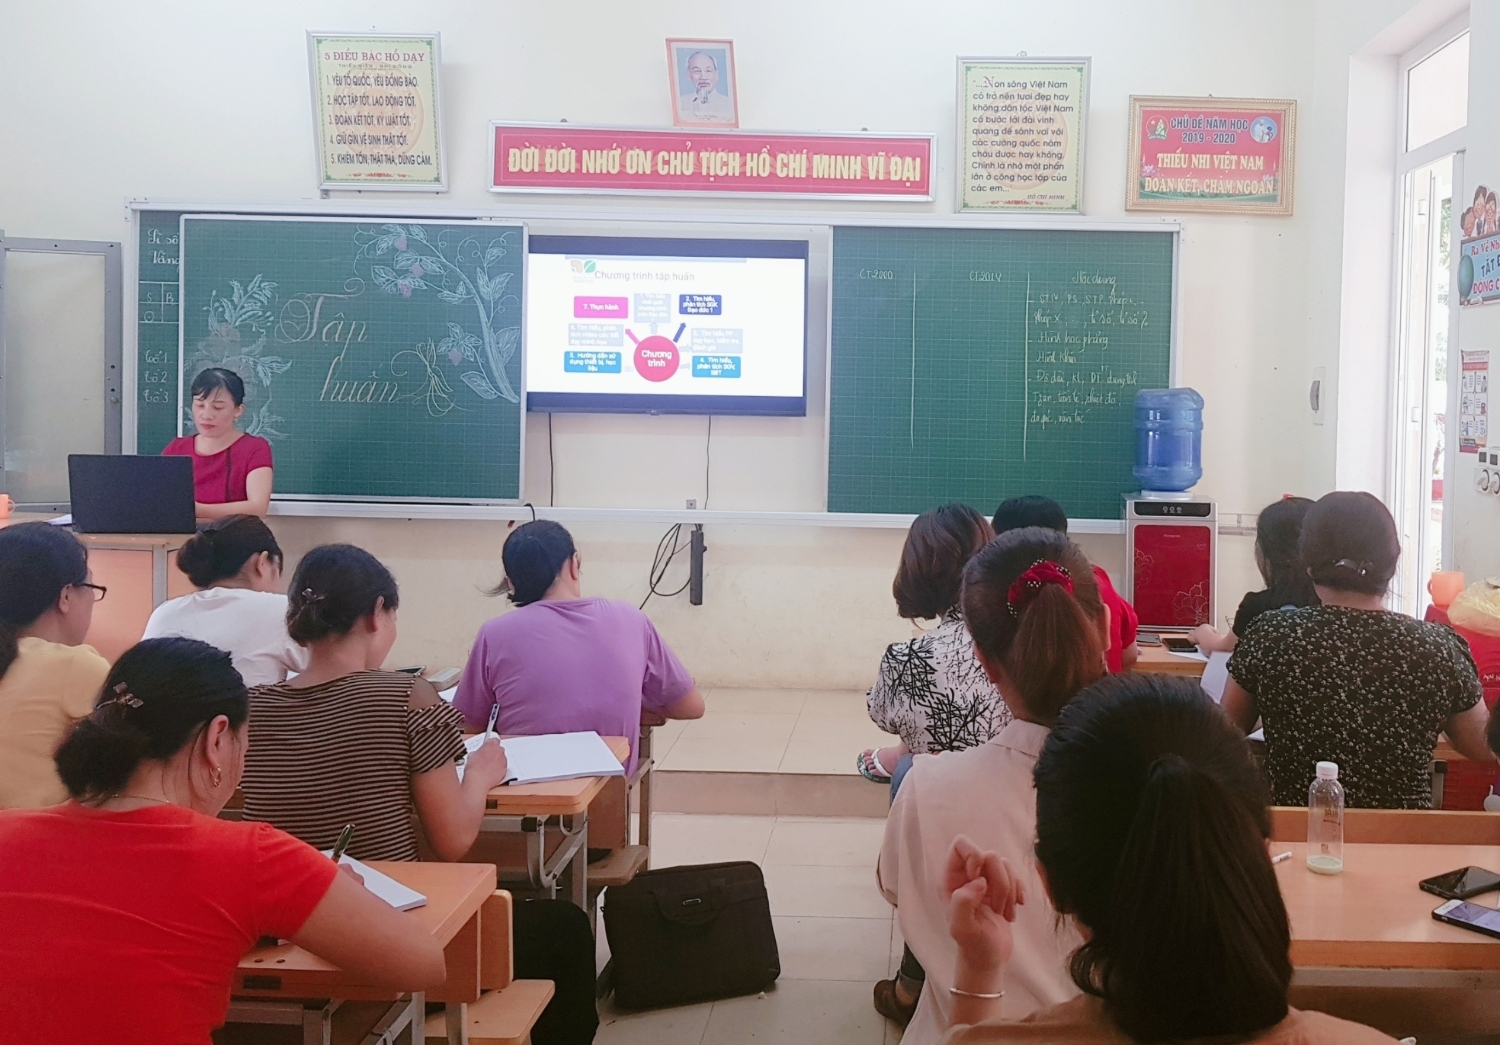 Trường Tiểu học Nghi Ân tổ chức tập huấn lớp 1 theo chương trình giáo dục phổ thông mới năm học 2020 - 2021